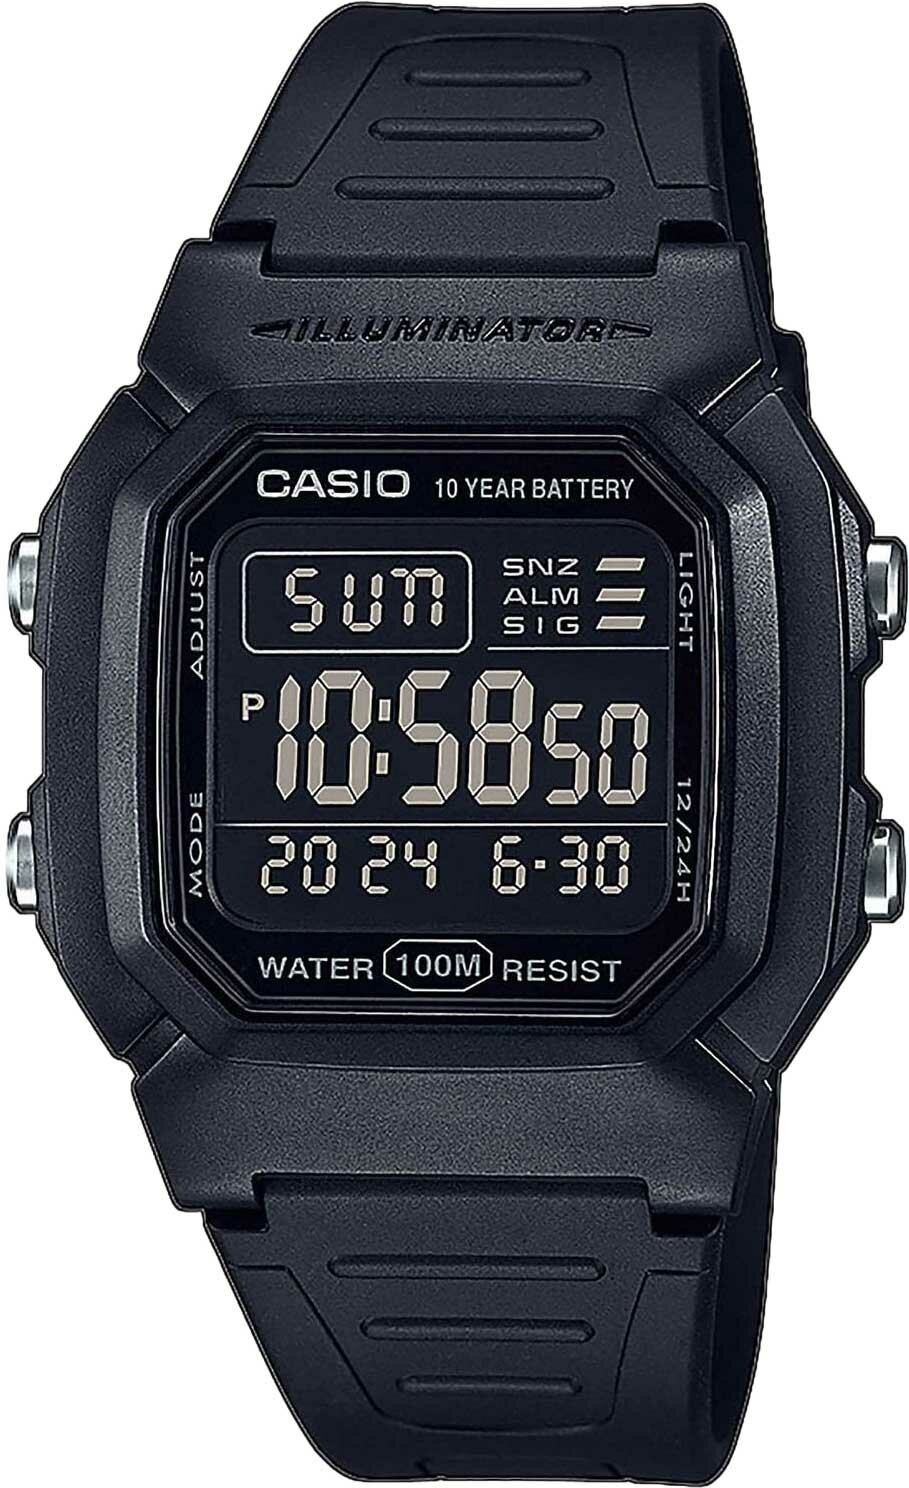 Наручные часы CASIO Collection W-800H-1BVES